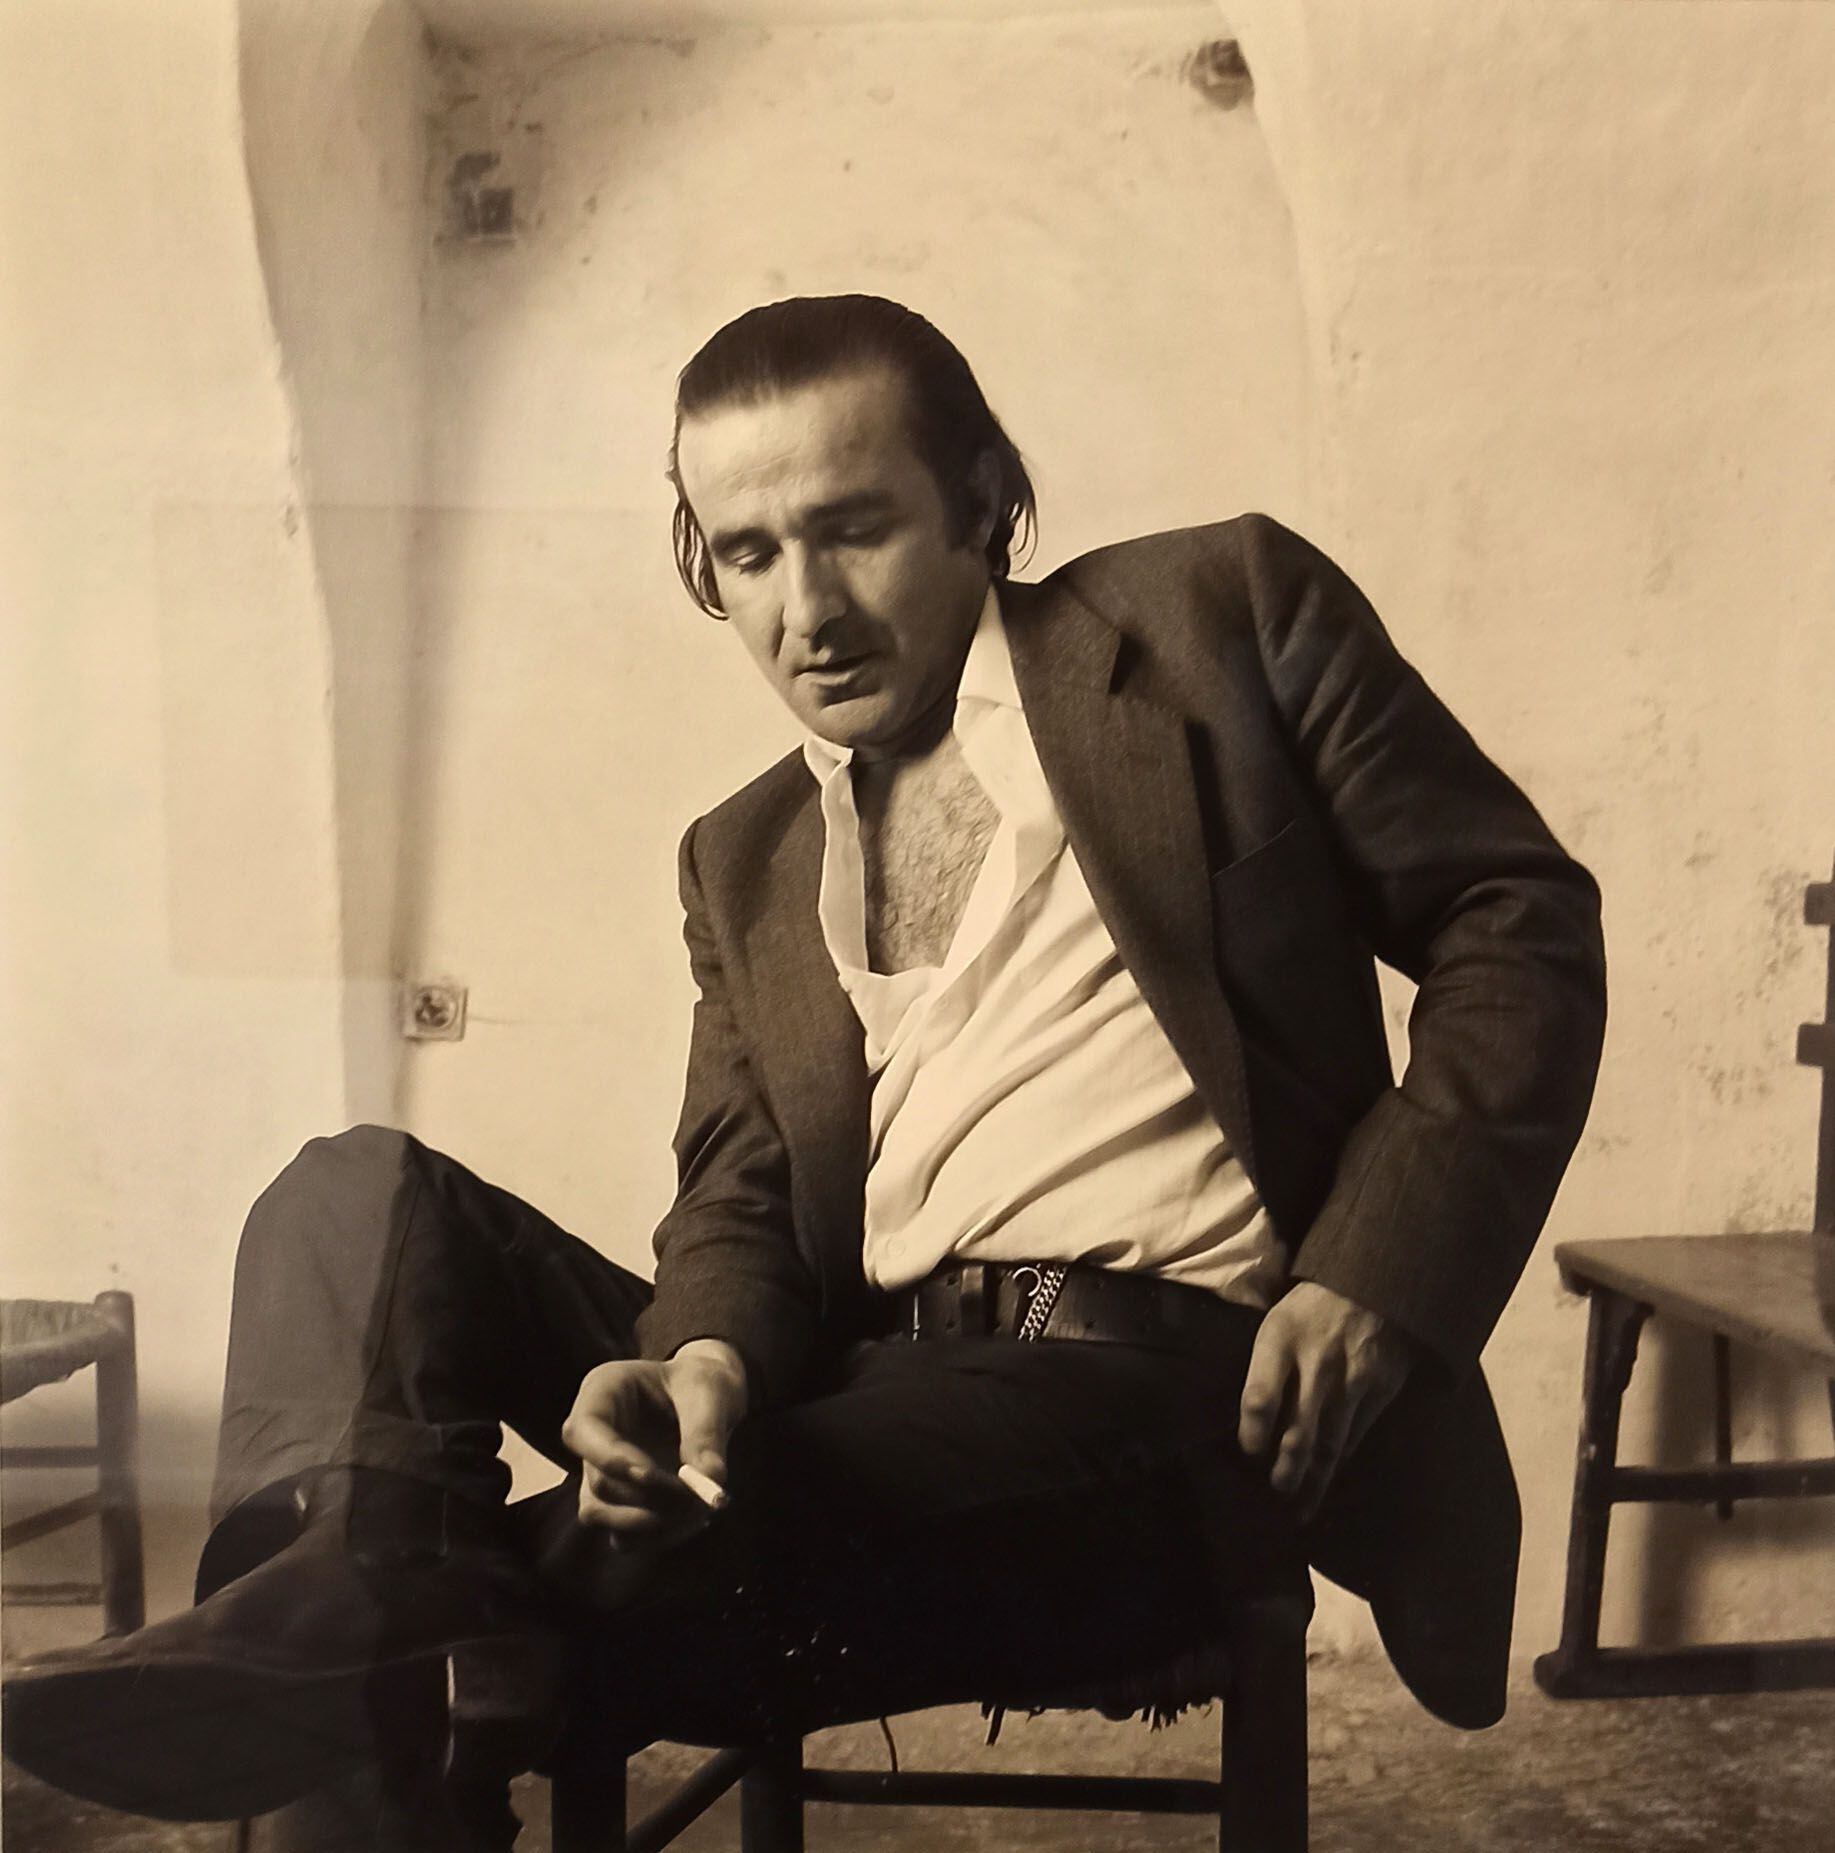 Foto de Luis Claramunt realizada por Alberto García-Alix en 1988, que puede verse en la exposición de Barcelona.